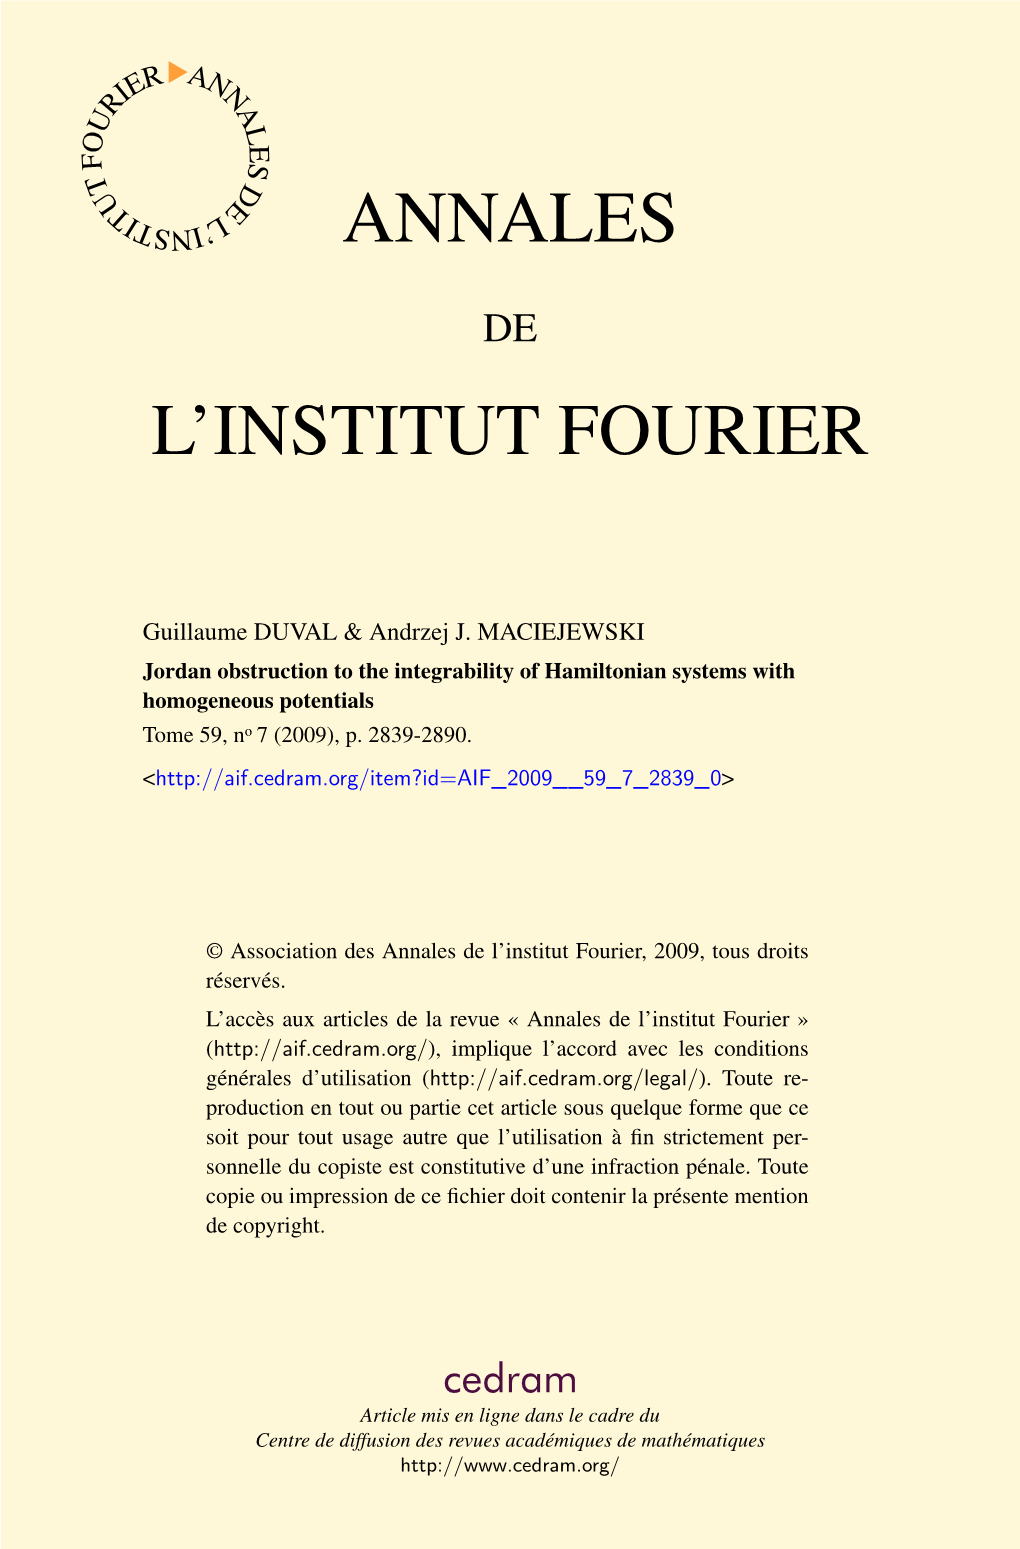 L'institut Fourier